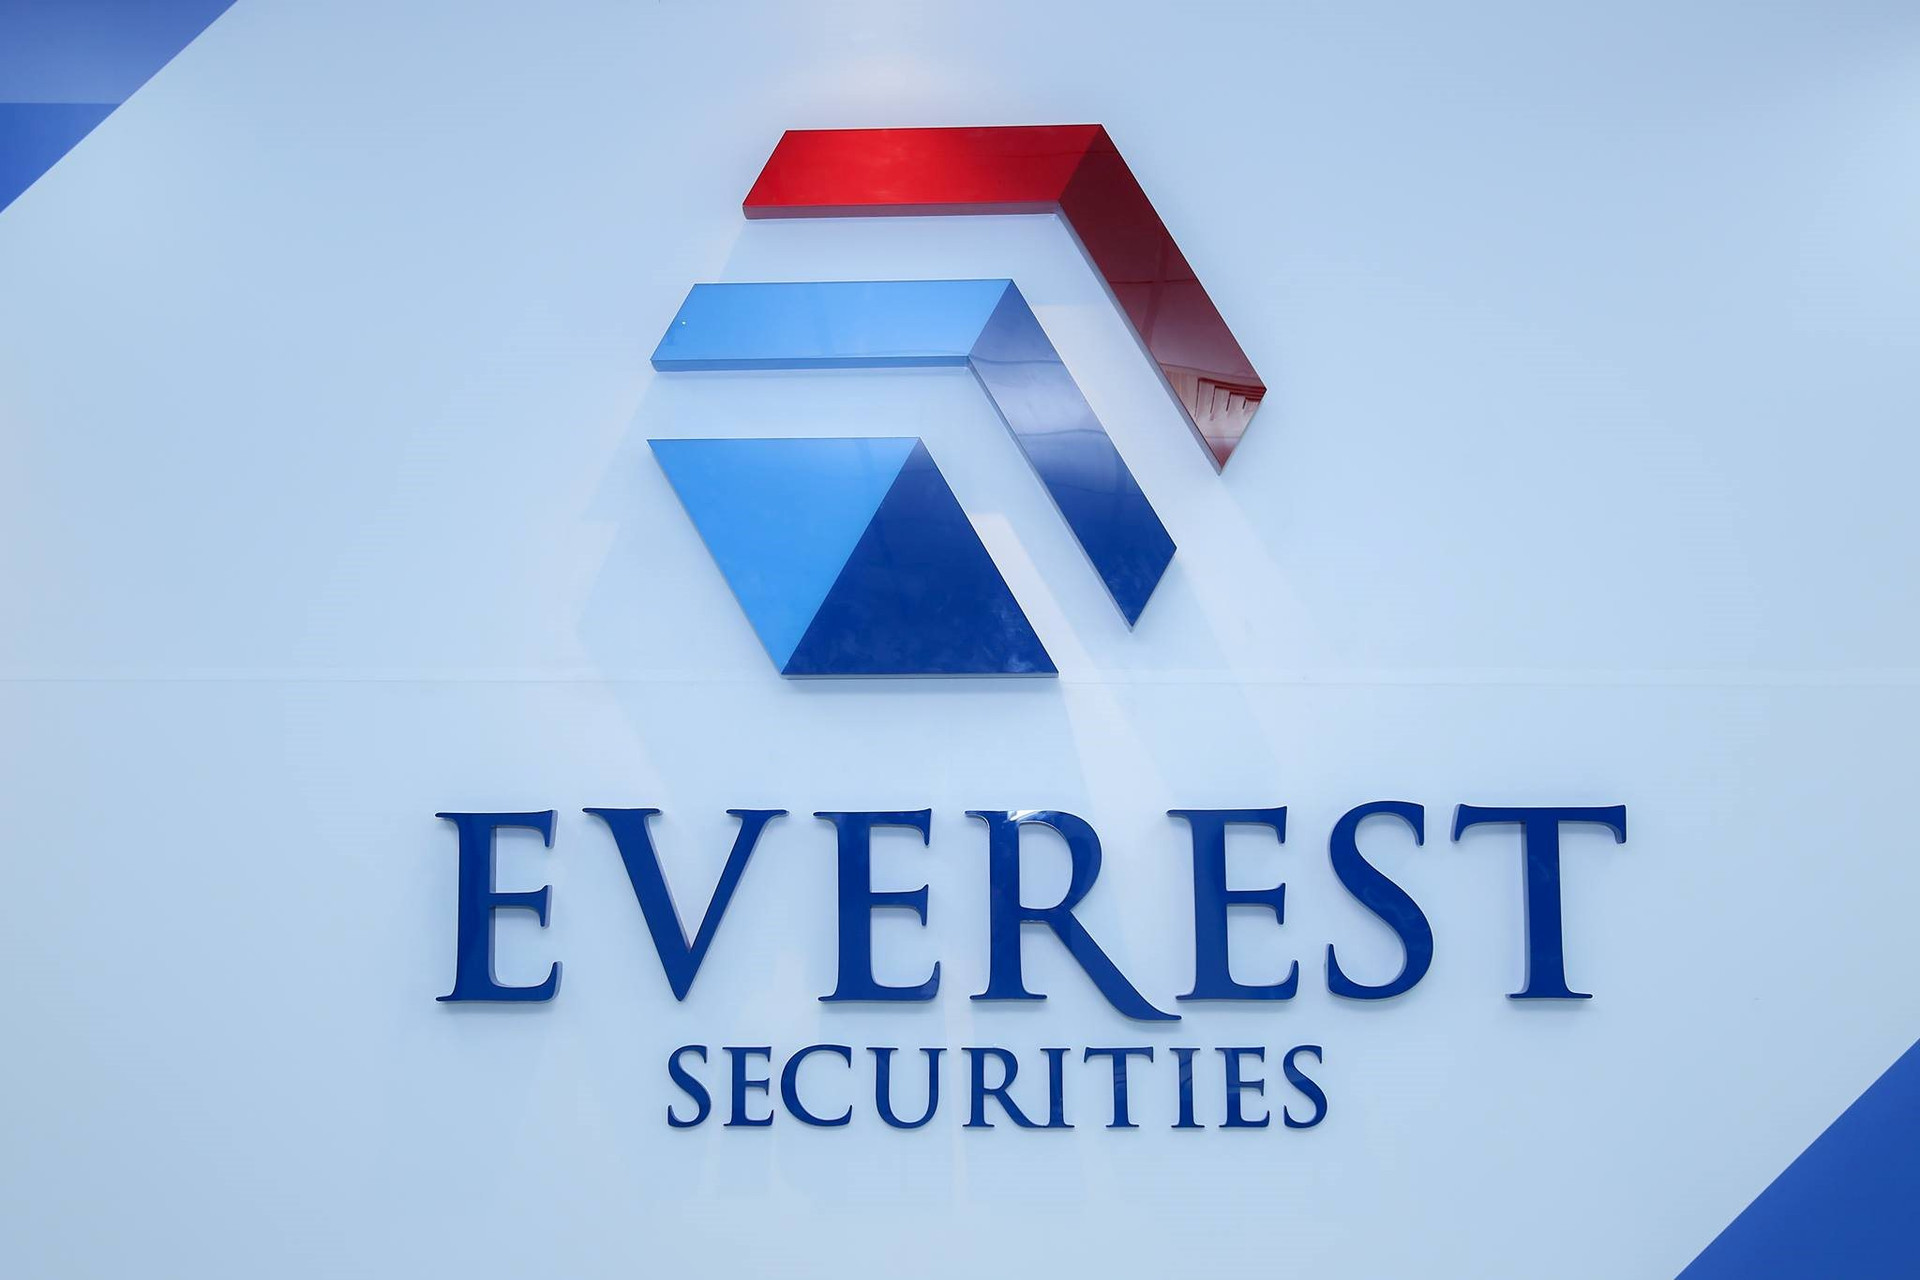 Chứng khoán Everest (EVS): Quỹ liên quan đến Phó Chủ tịch muốn gom 3 triệu cổ phiếu